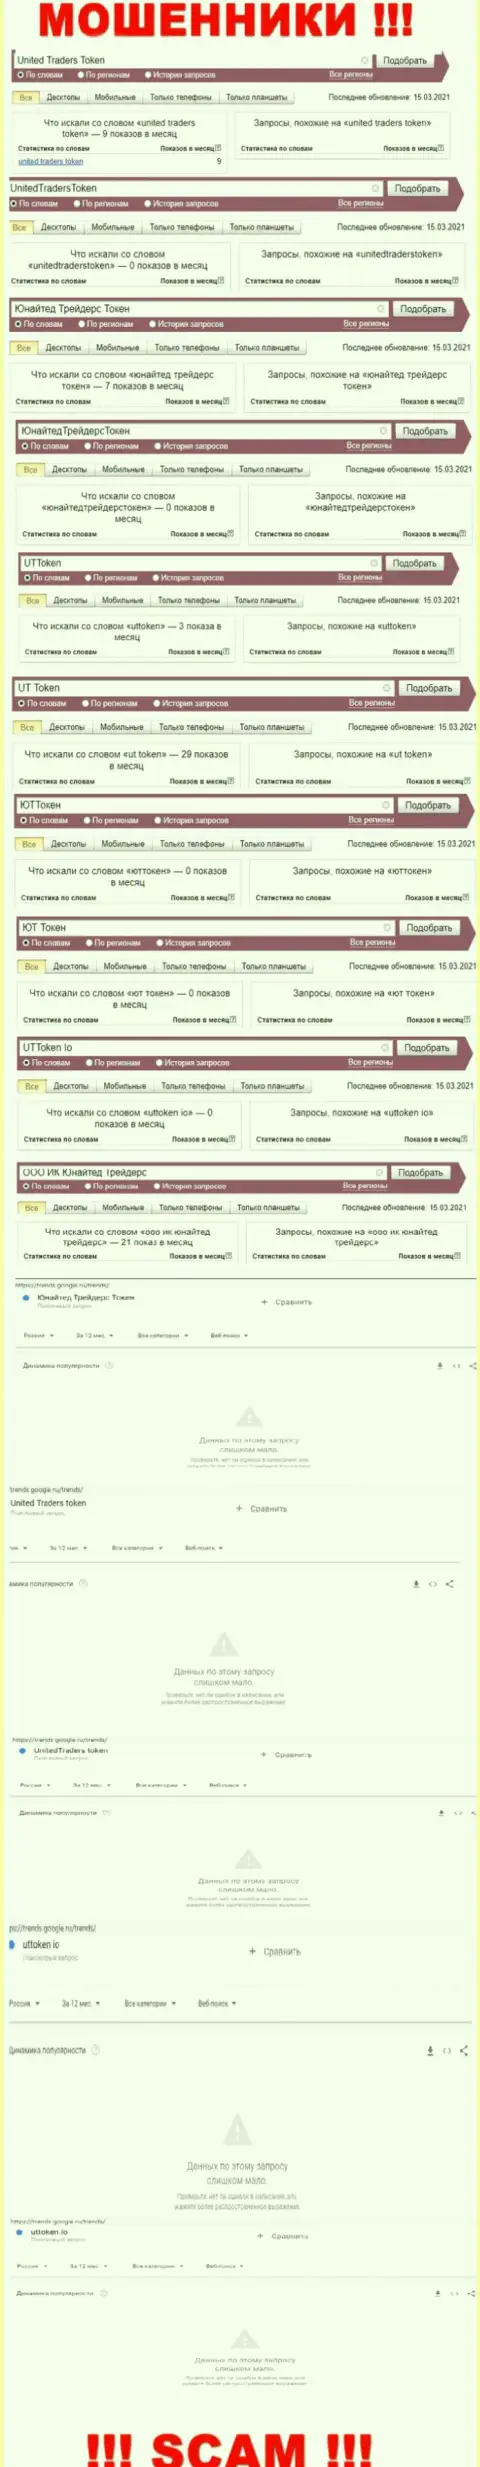 Количество онлайн запросов посетителями всемирной сети internet информации об махинаторах Юнайтед Трейдерс Токен